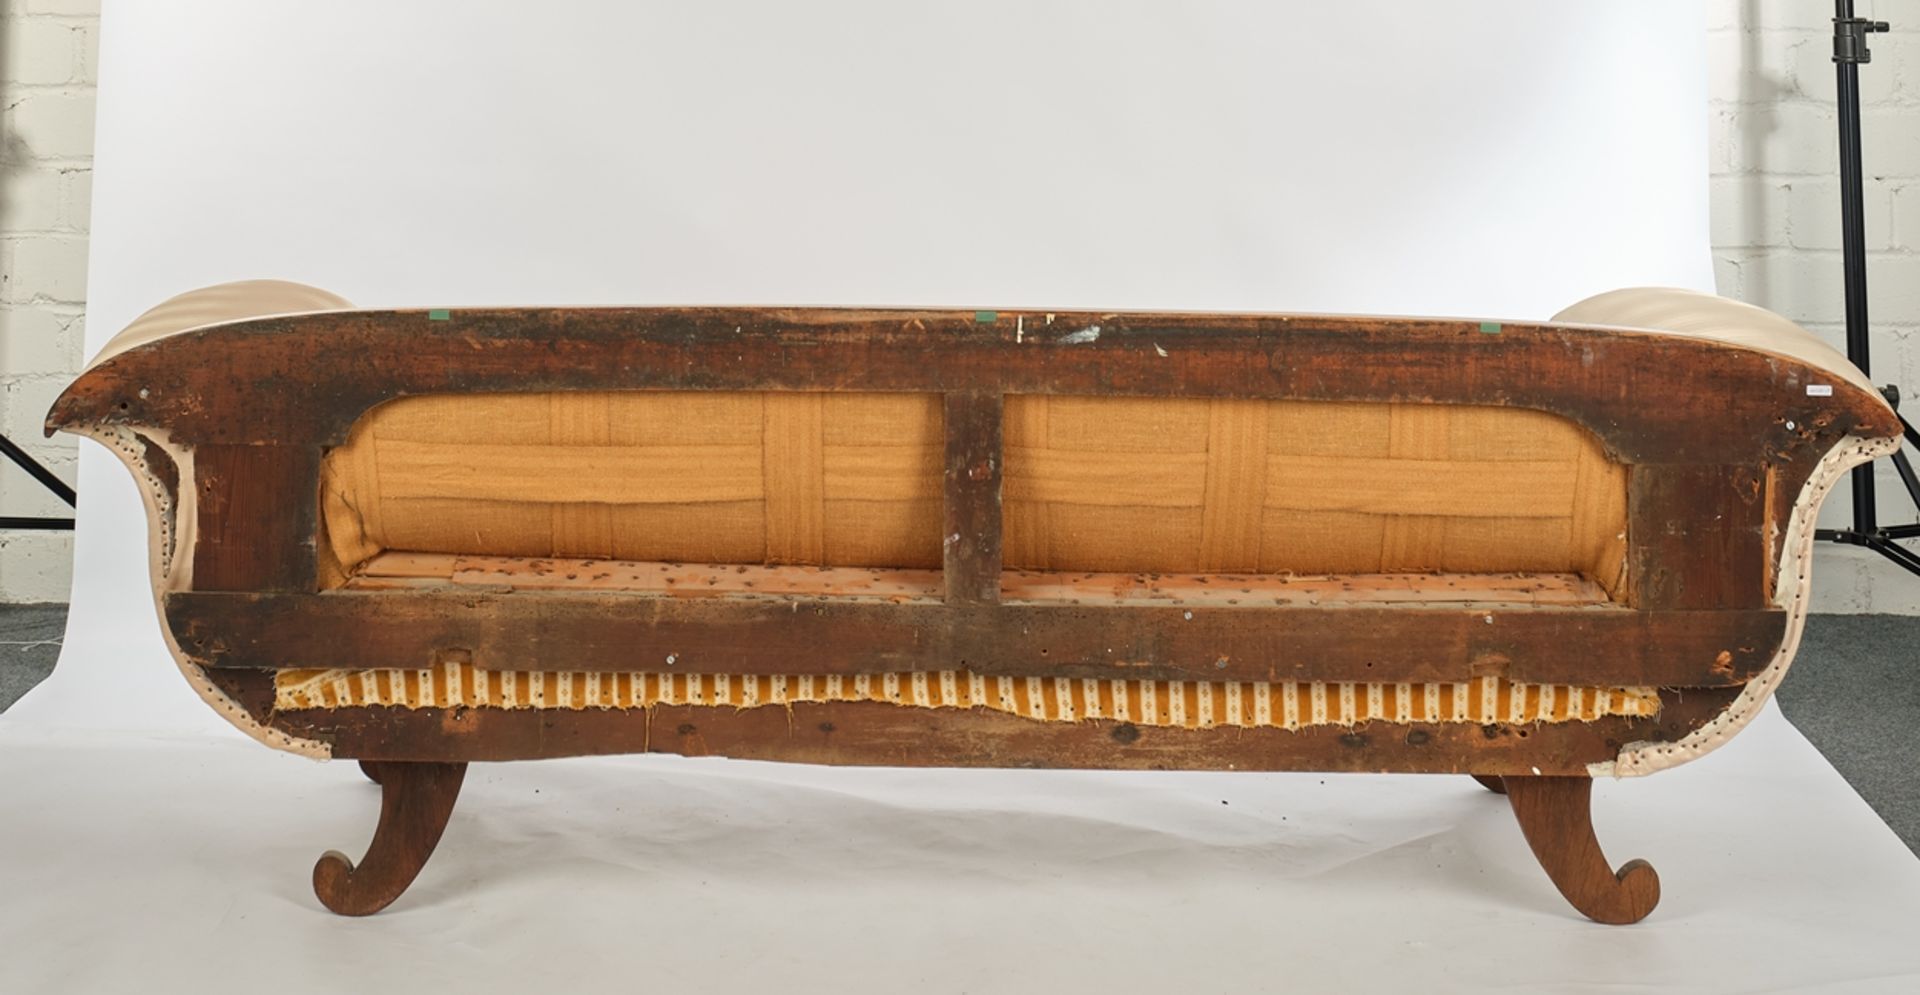 Sofa, Empire, um 1810/20, Mahagoni, Fadeneinlagen, vasenförmige Armlehnen schauseitig mit geschnitz - Bild 2 aus 2